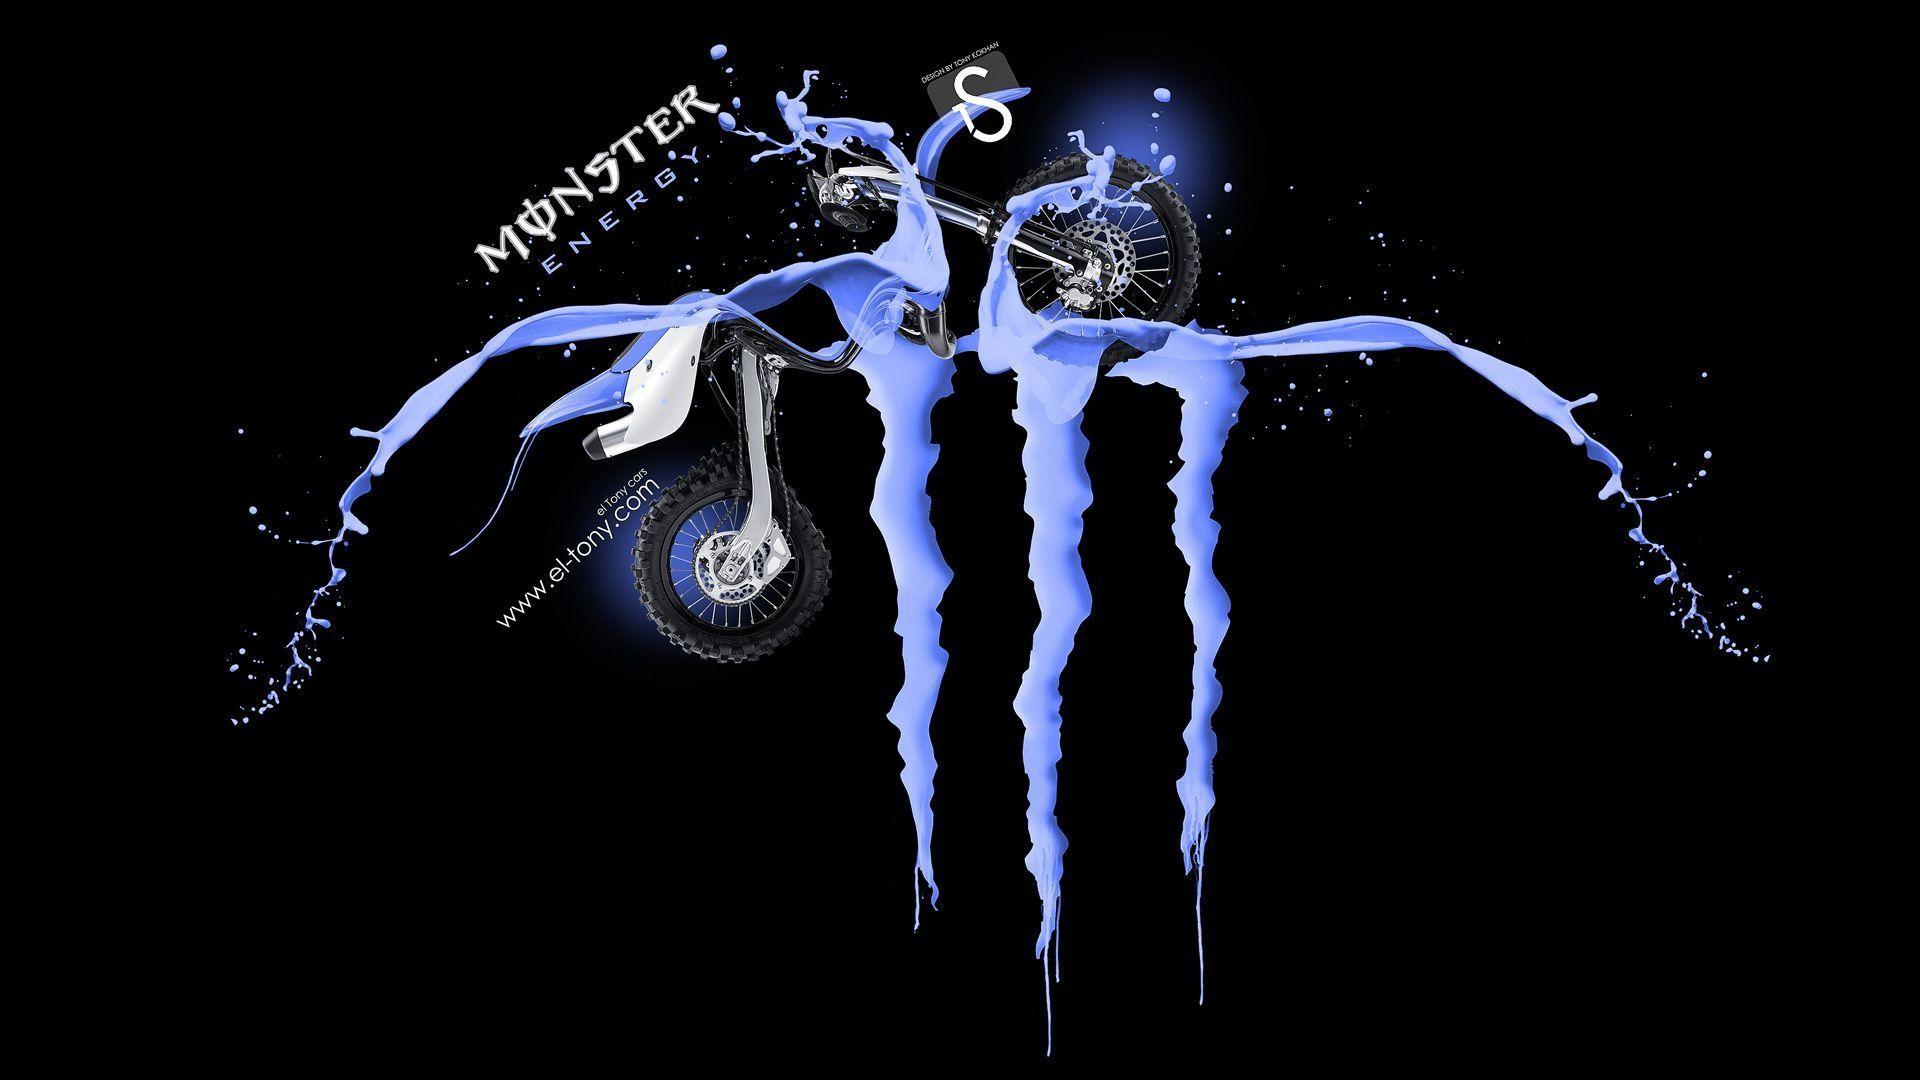 Blue Monster Energy Logo Wallpaper